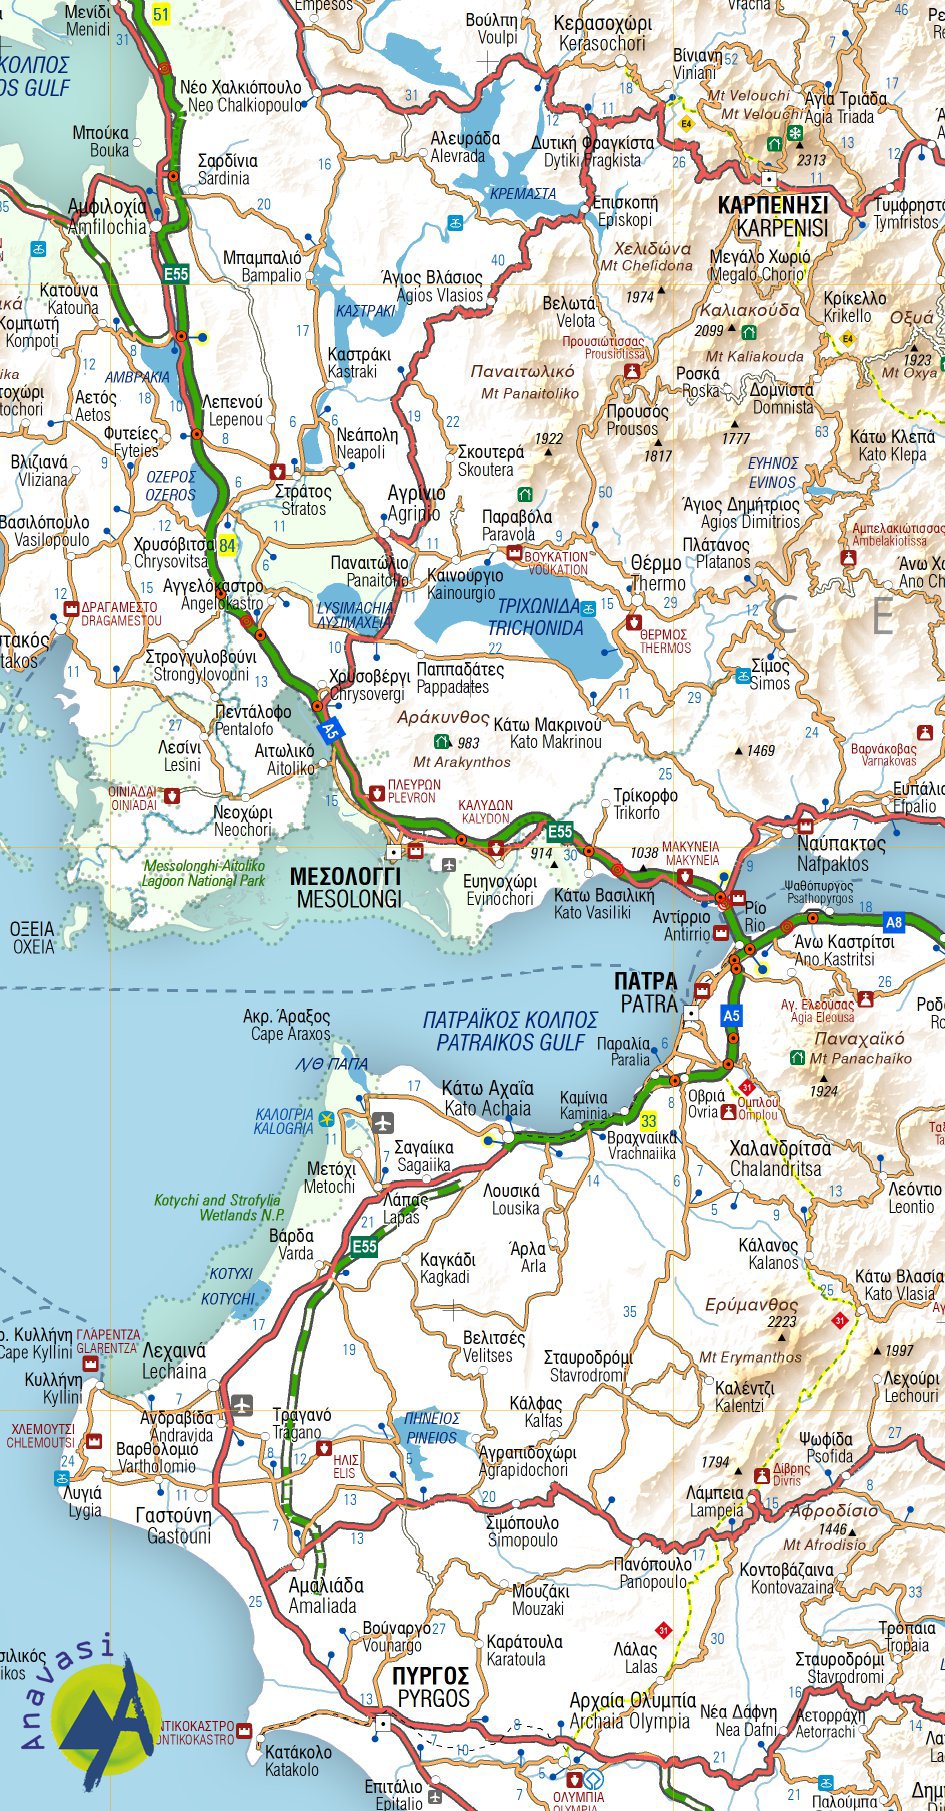 Greece • Adventure Map 1:700.000